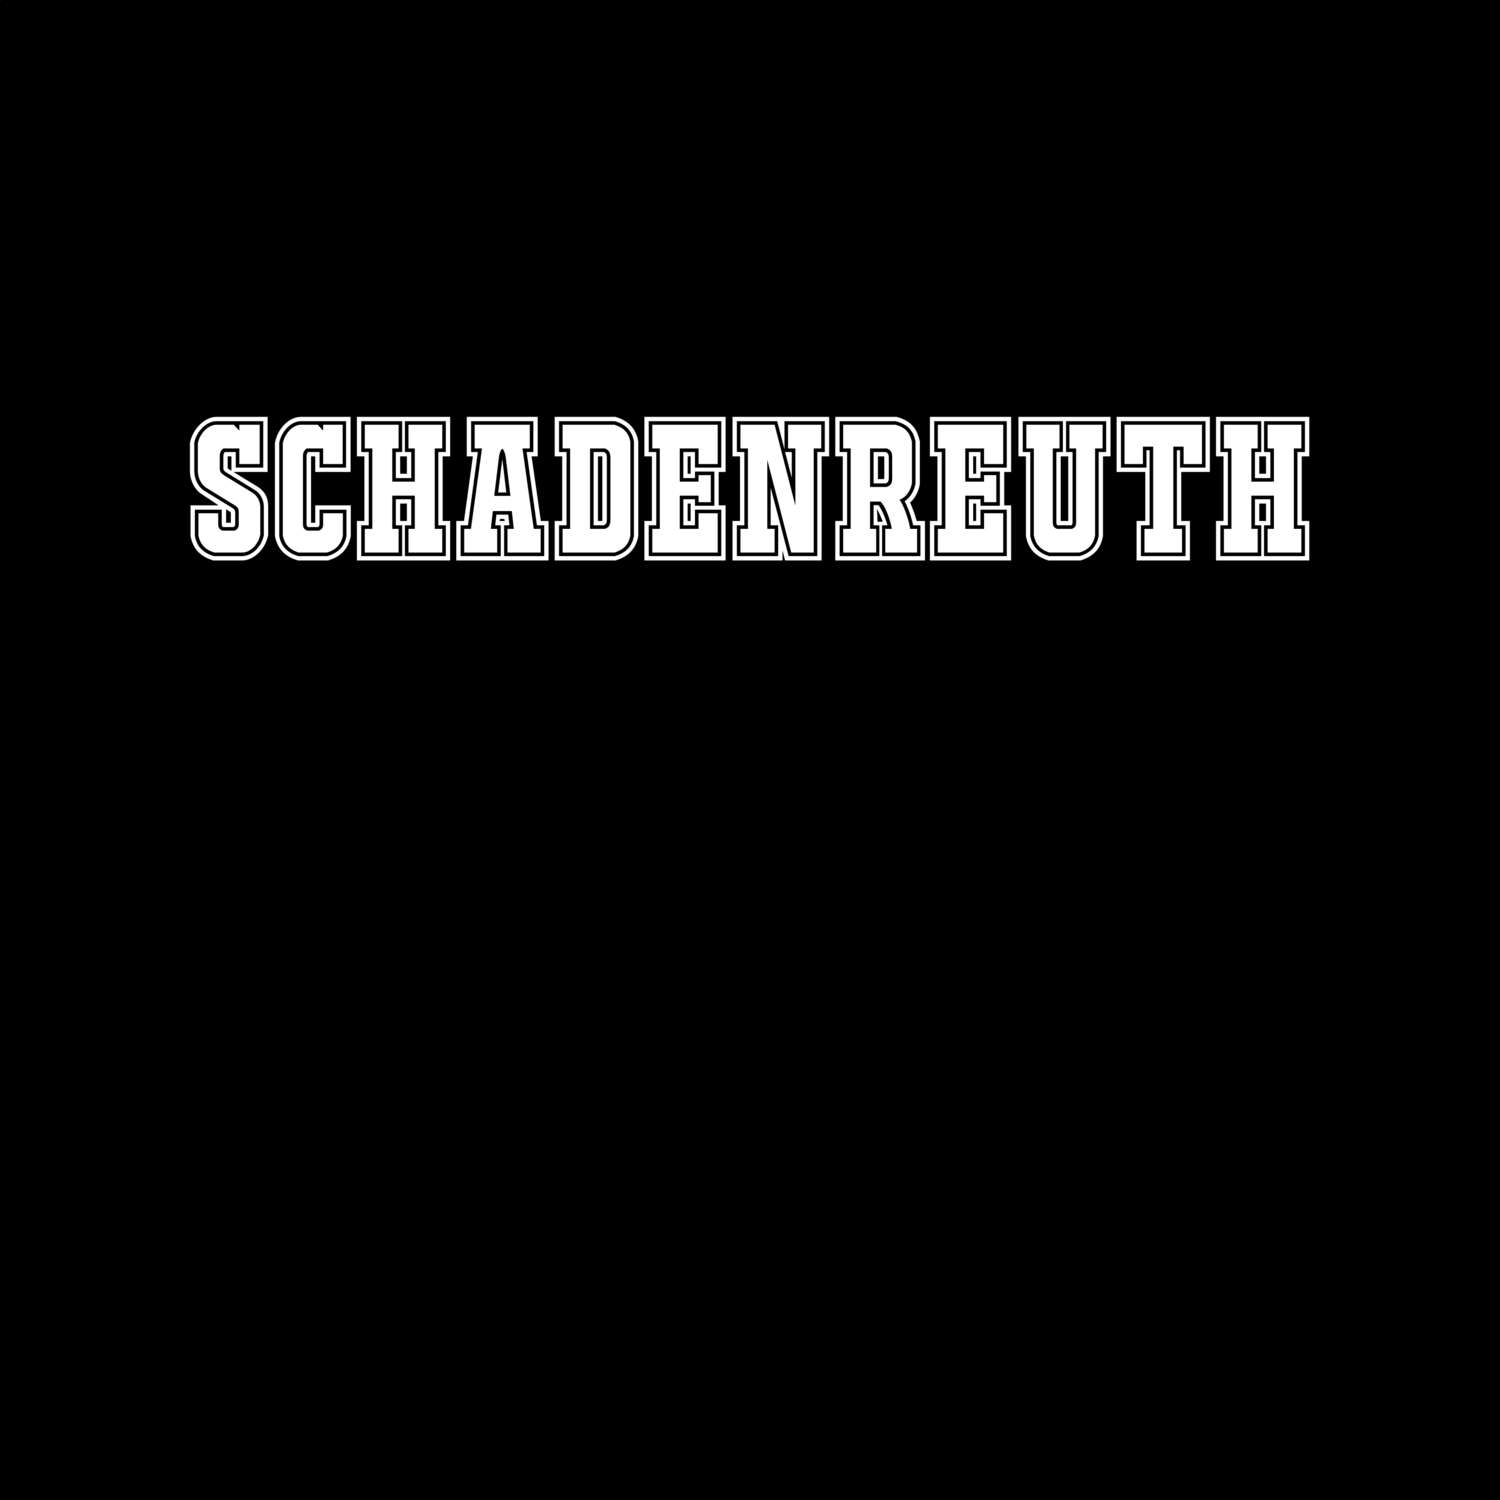 Schadenreuth T-Shirt »Classic«